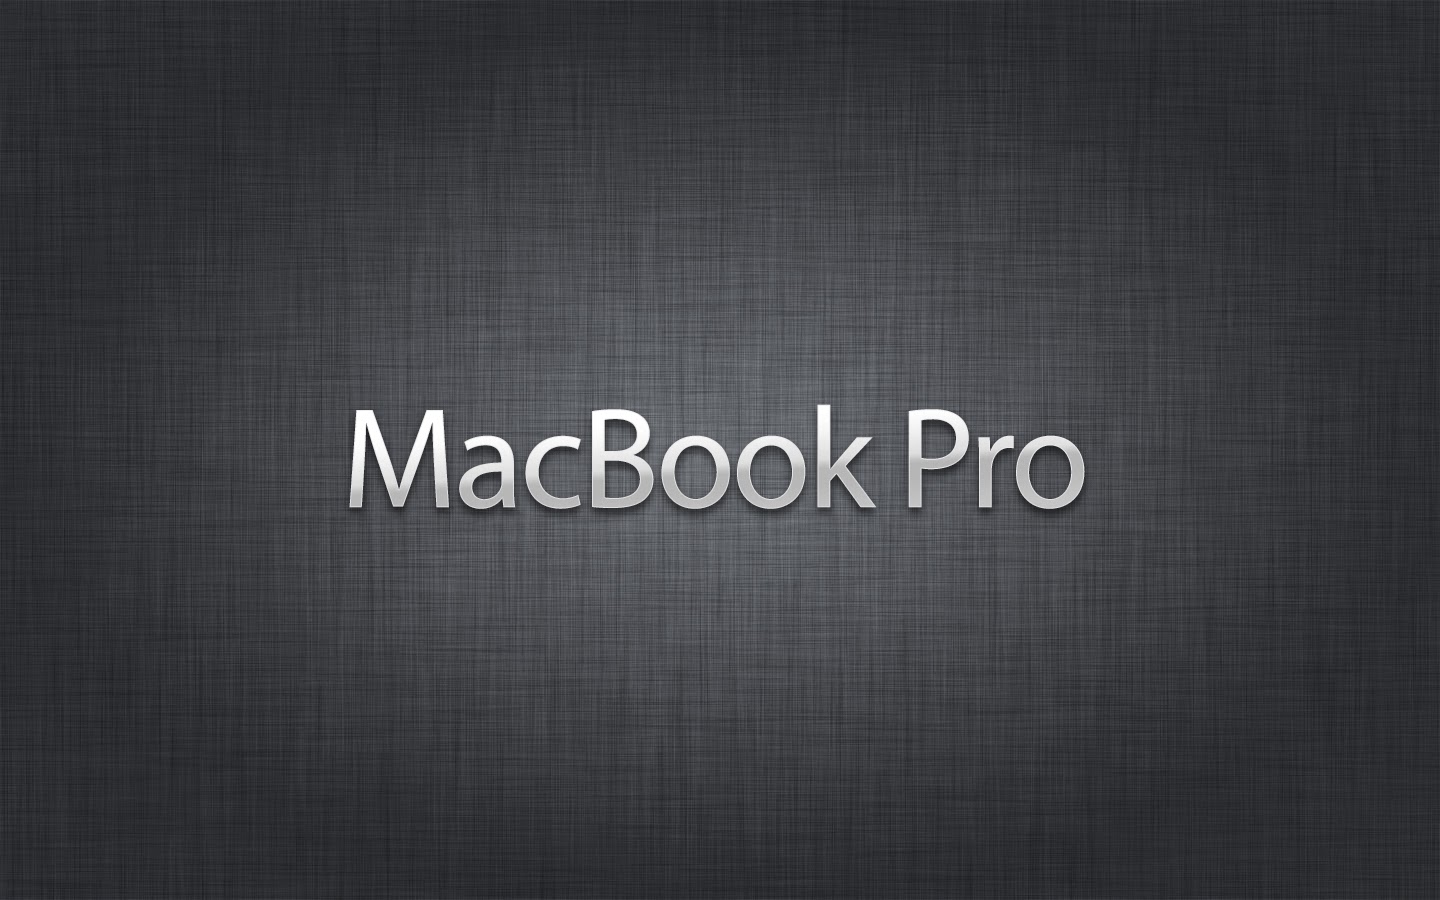 macbook proの壁紙,テキスト,フォント,黒,グラフィックス,パターン